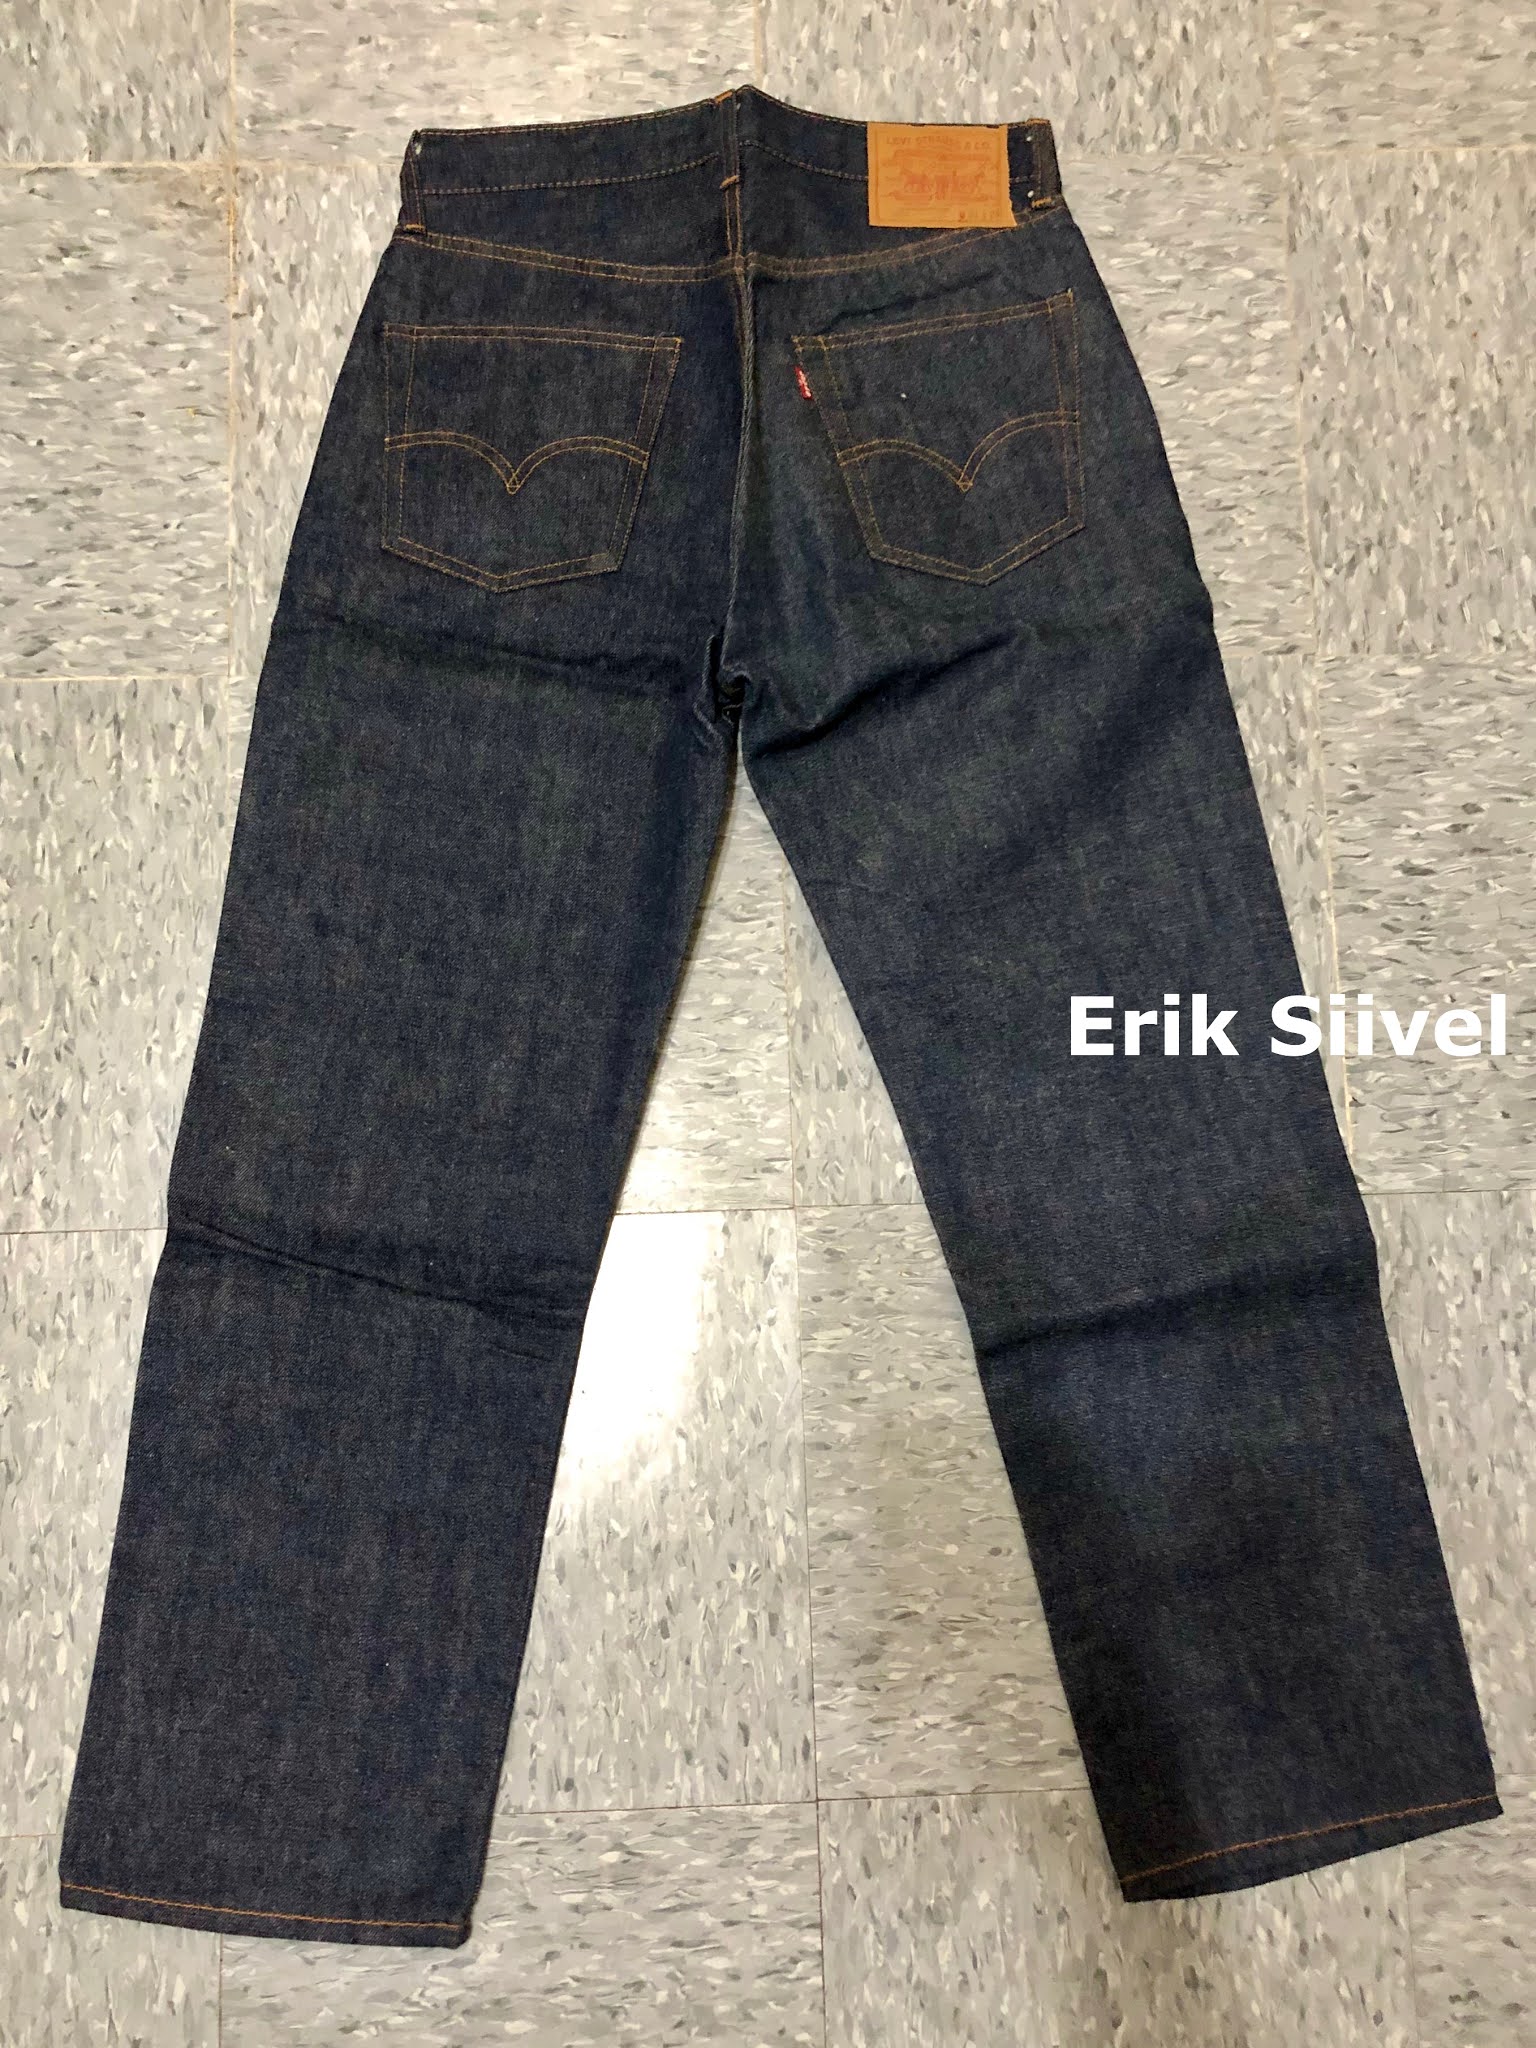 Erik Siivel 的部落格: 原版LEVI'S「66前期」501 牛仔褲還未退漿哦！